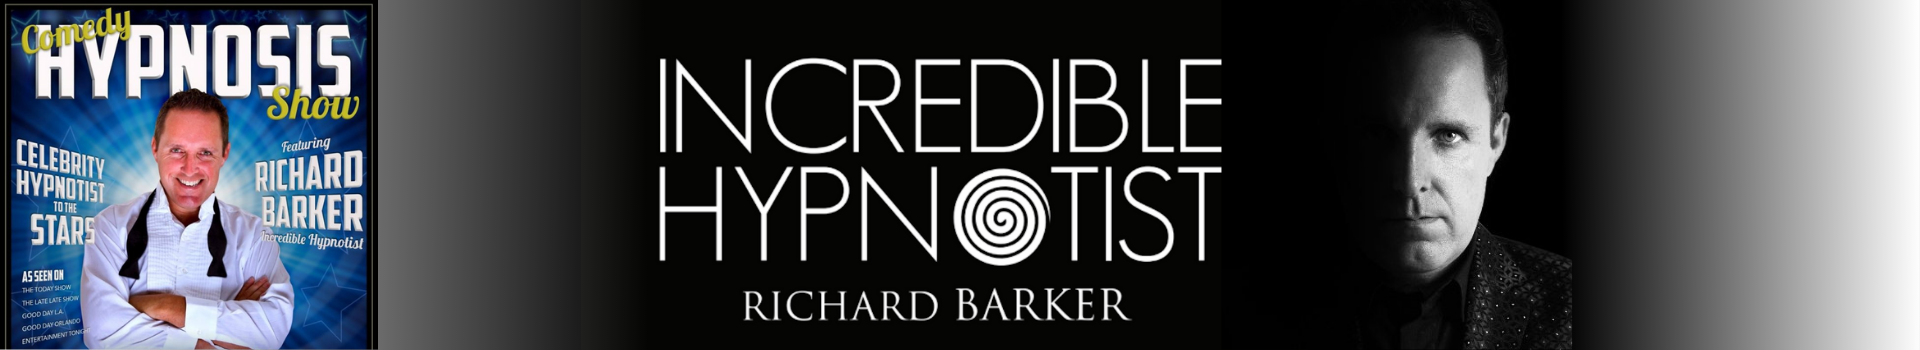 Richard barker hypnotist.